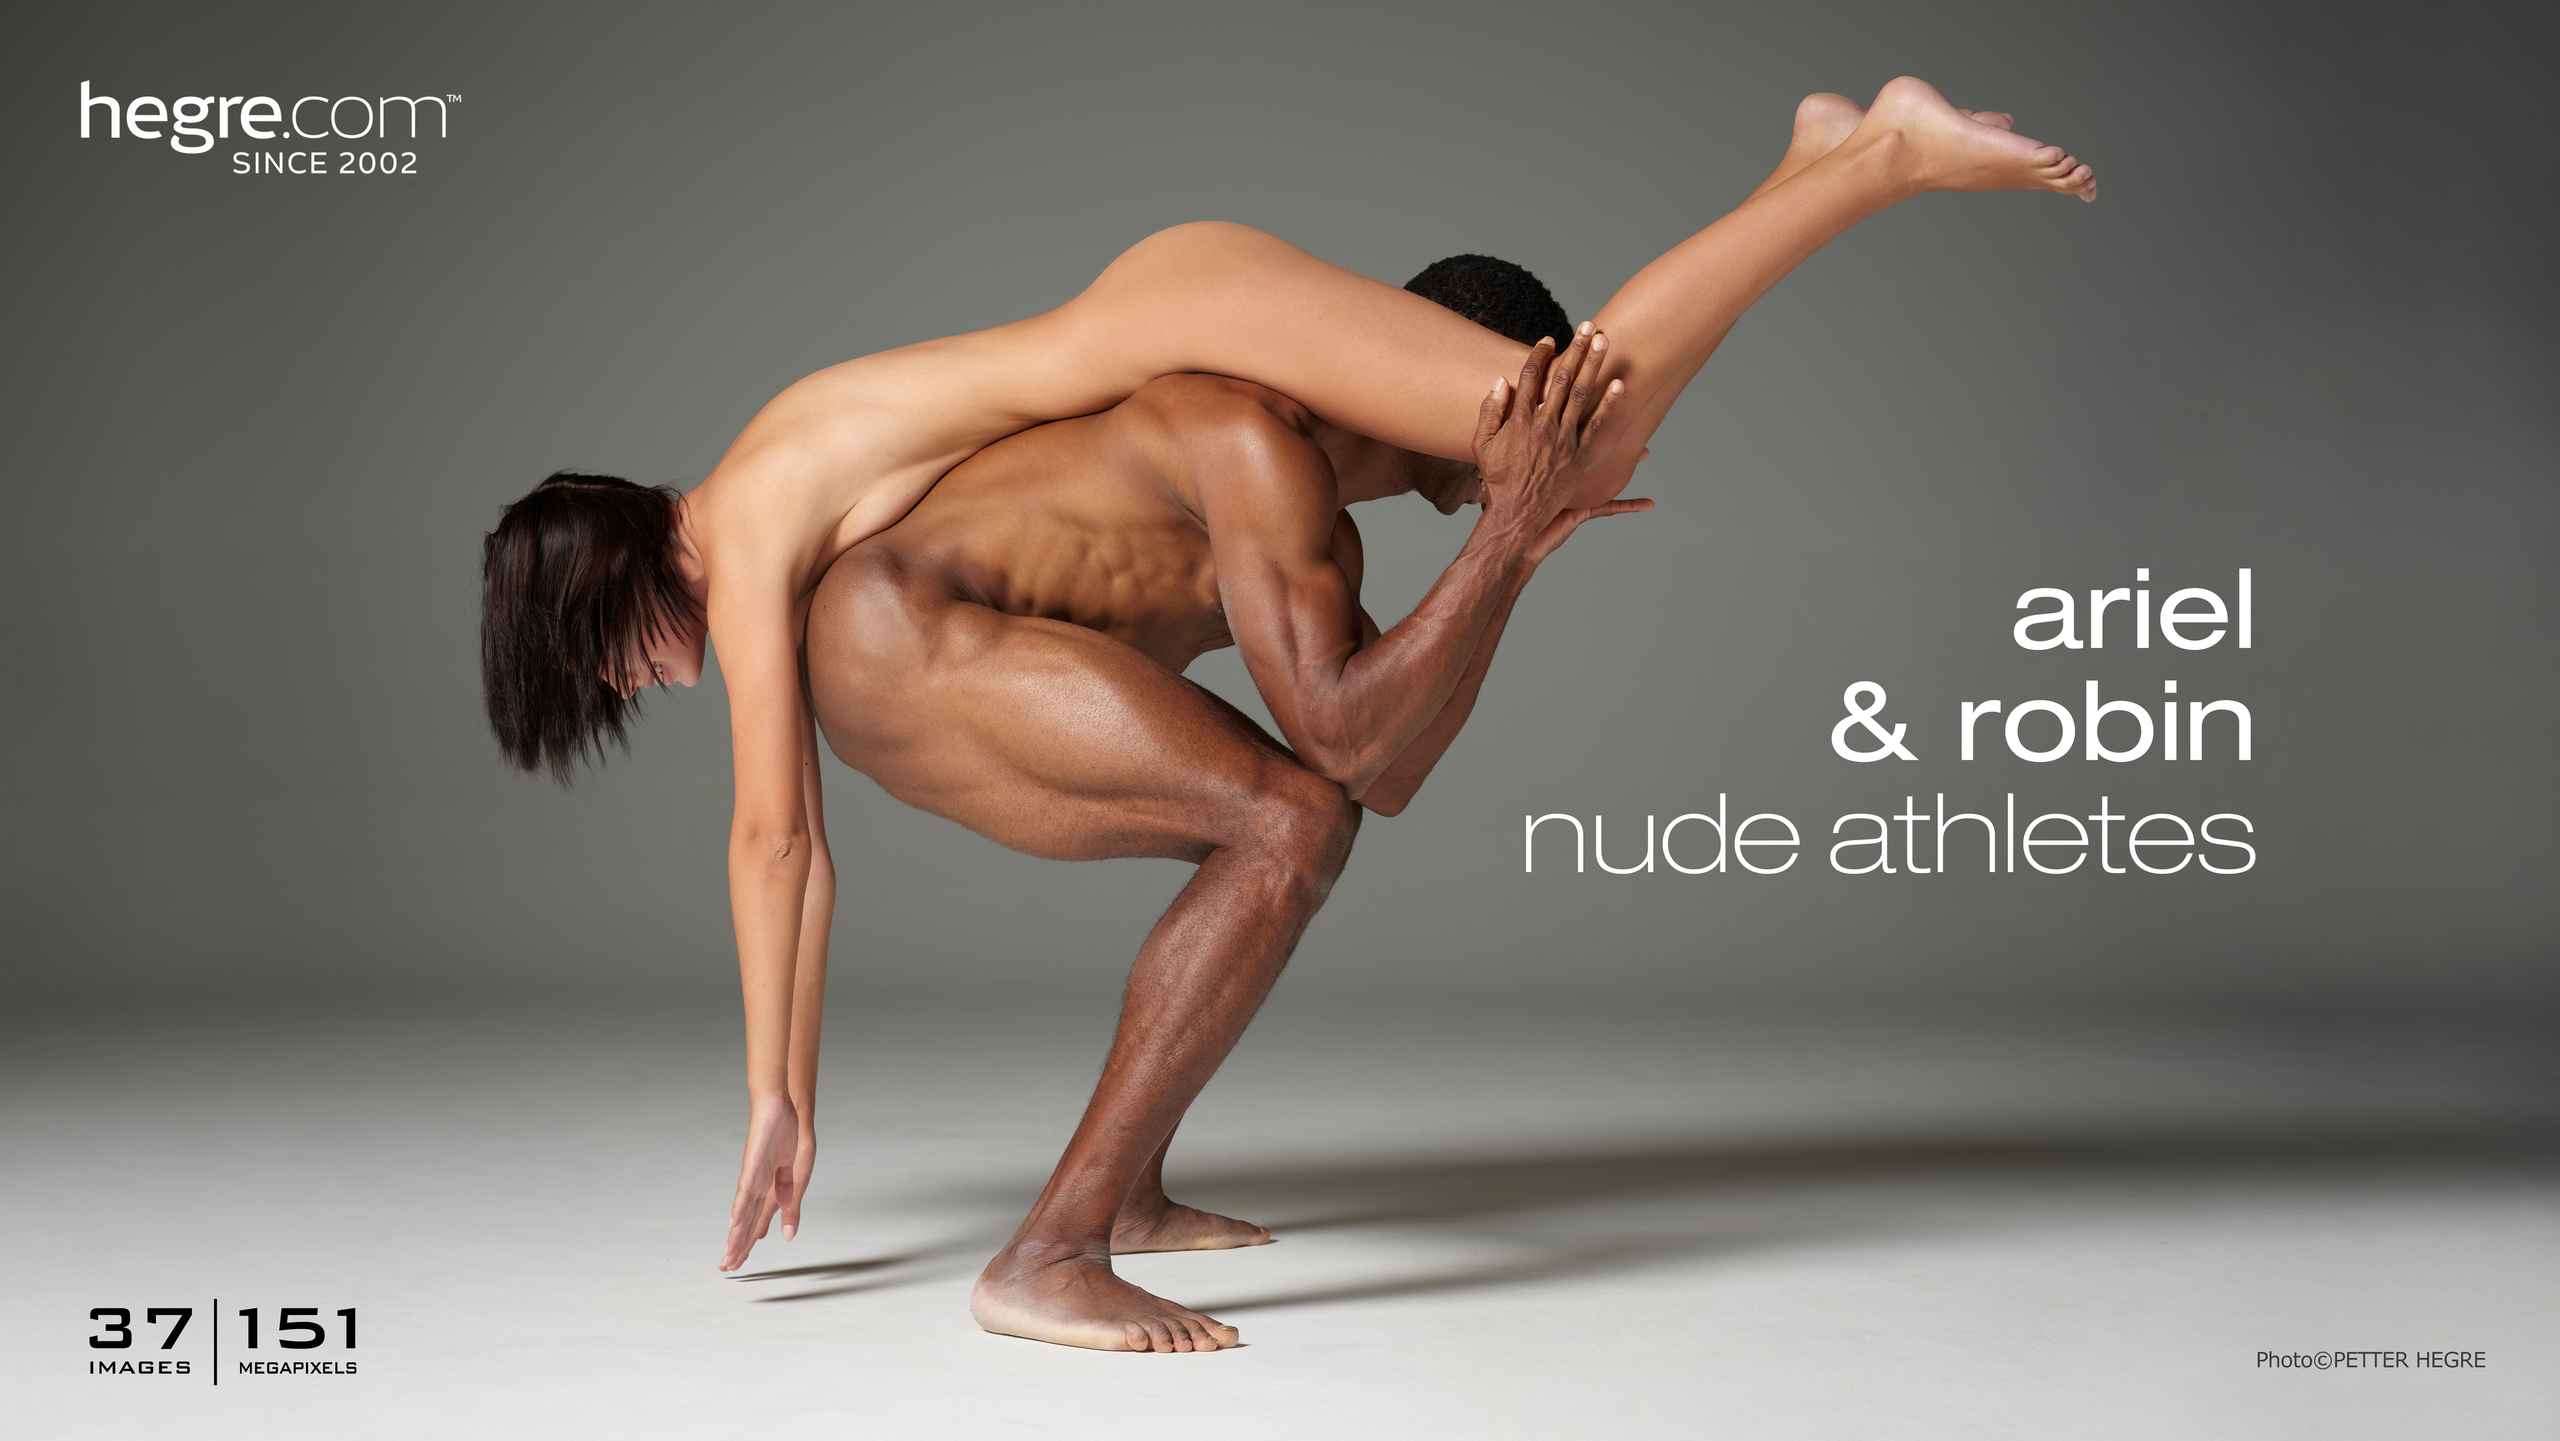 hegre.com ariel and robin nude athletes big